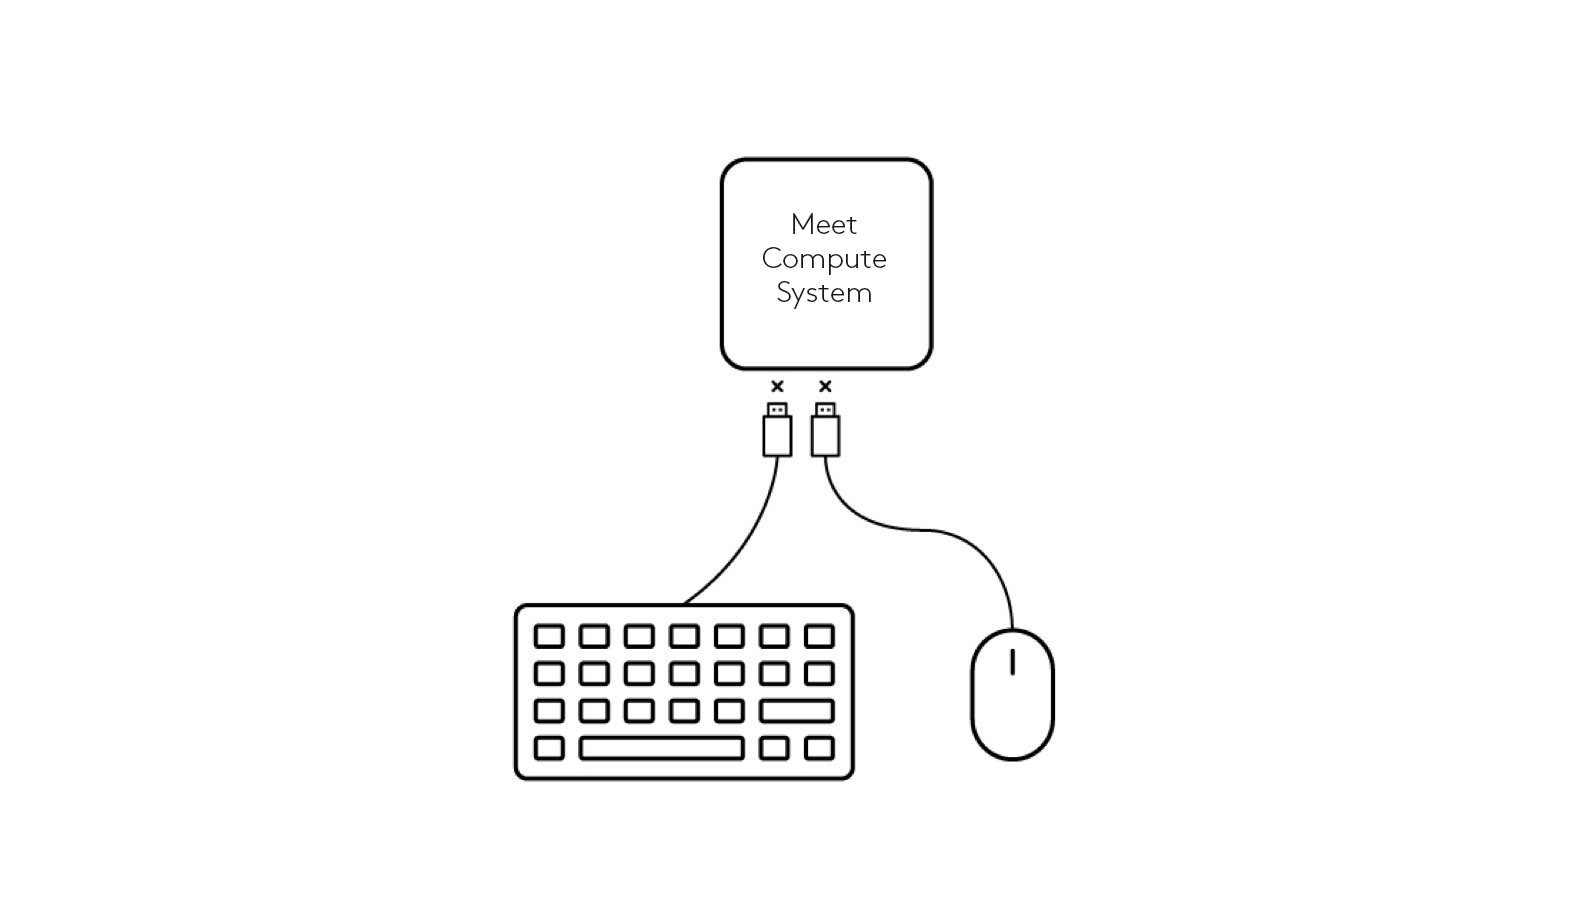 Schemat odłączenia klawiatury i myszy od systemu Meet Compute